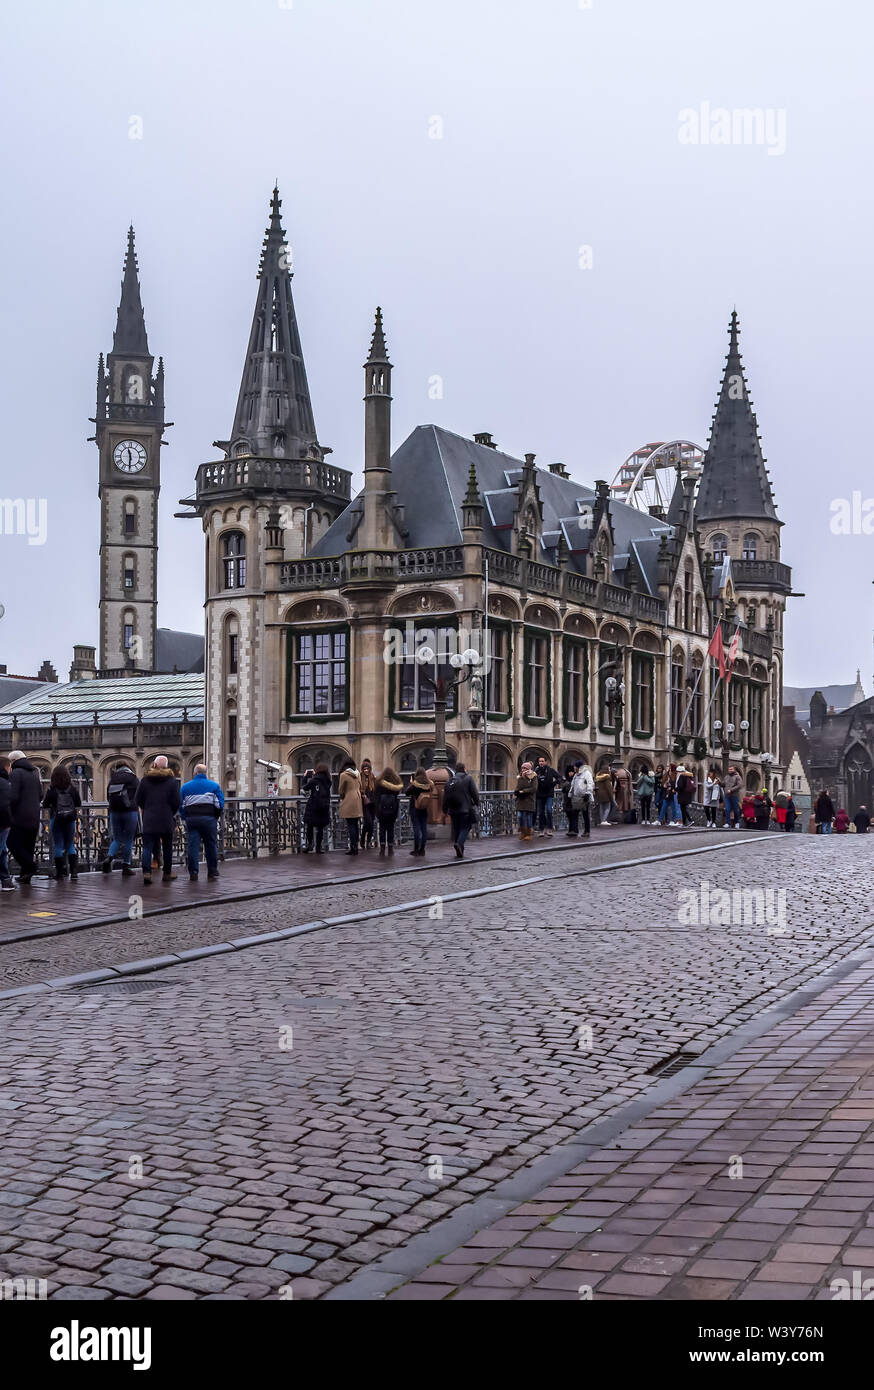 Touristen machen Fotos stehen auf Sint-Michielsbrug oder St Michael's Bridge in der Nähe von alten Postgebäude in nebligen Winter morgen. Stockfoto